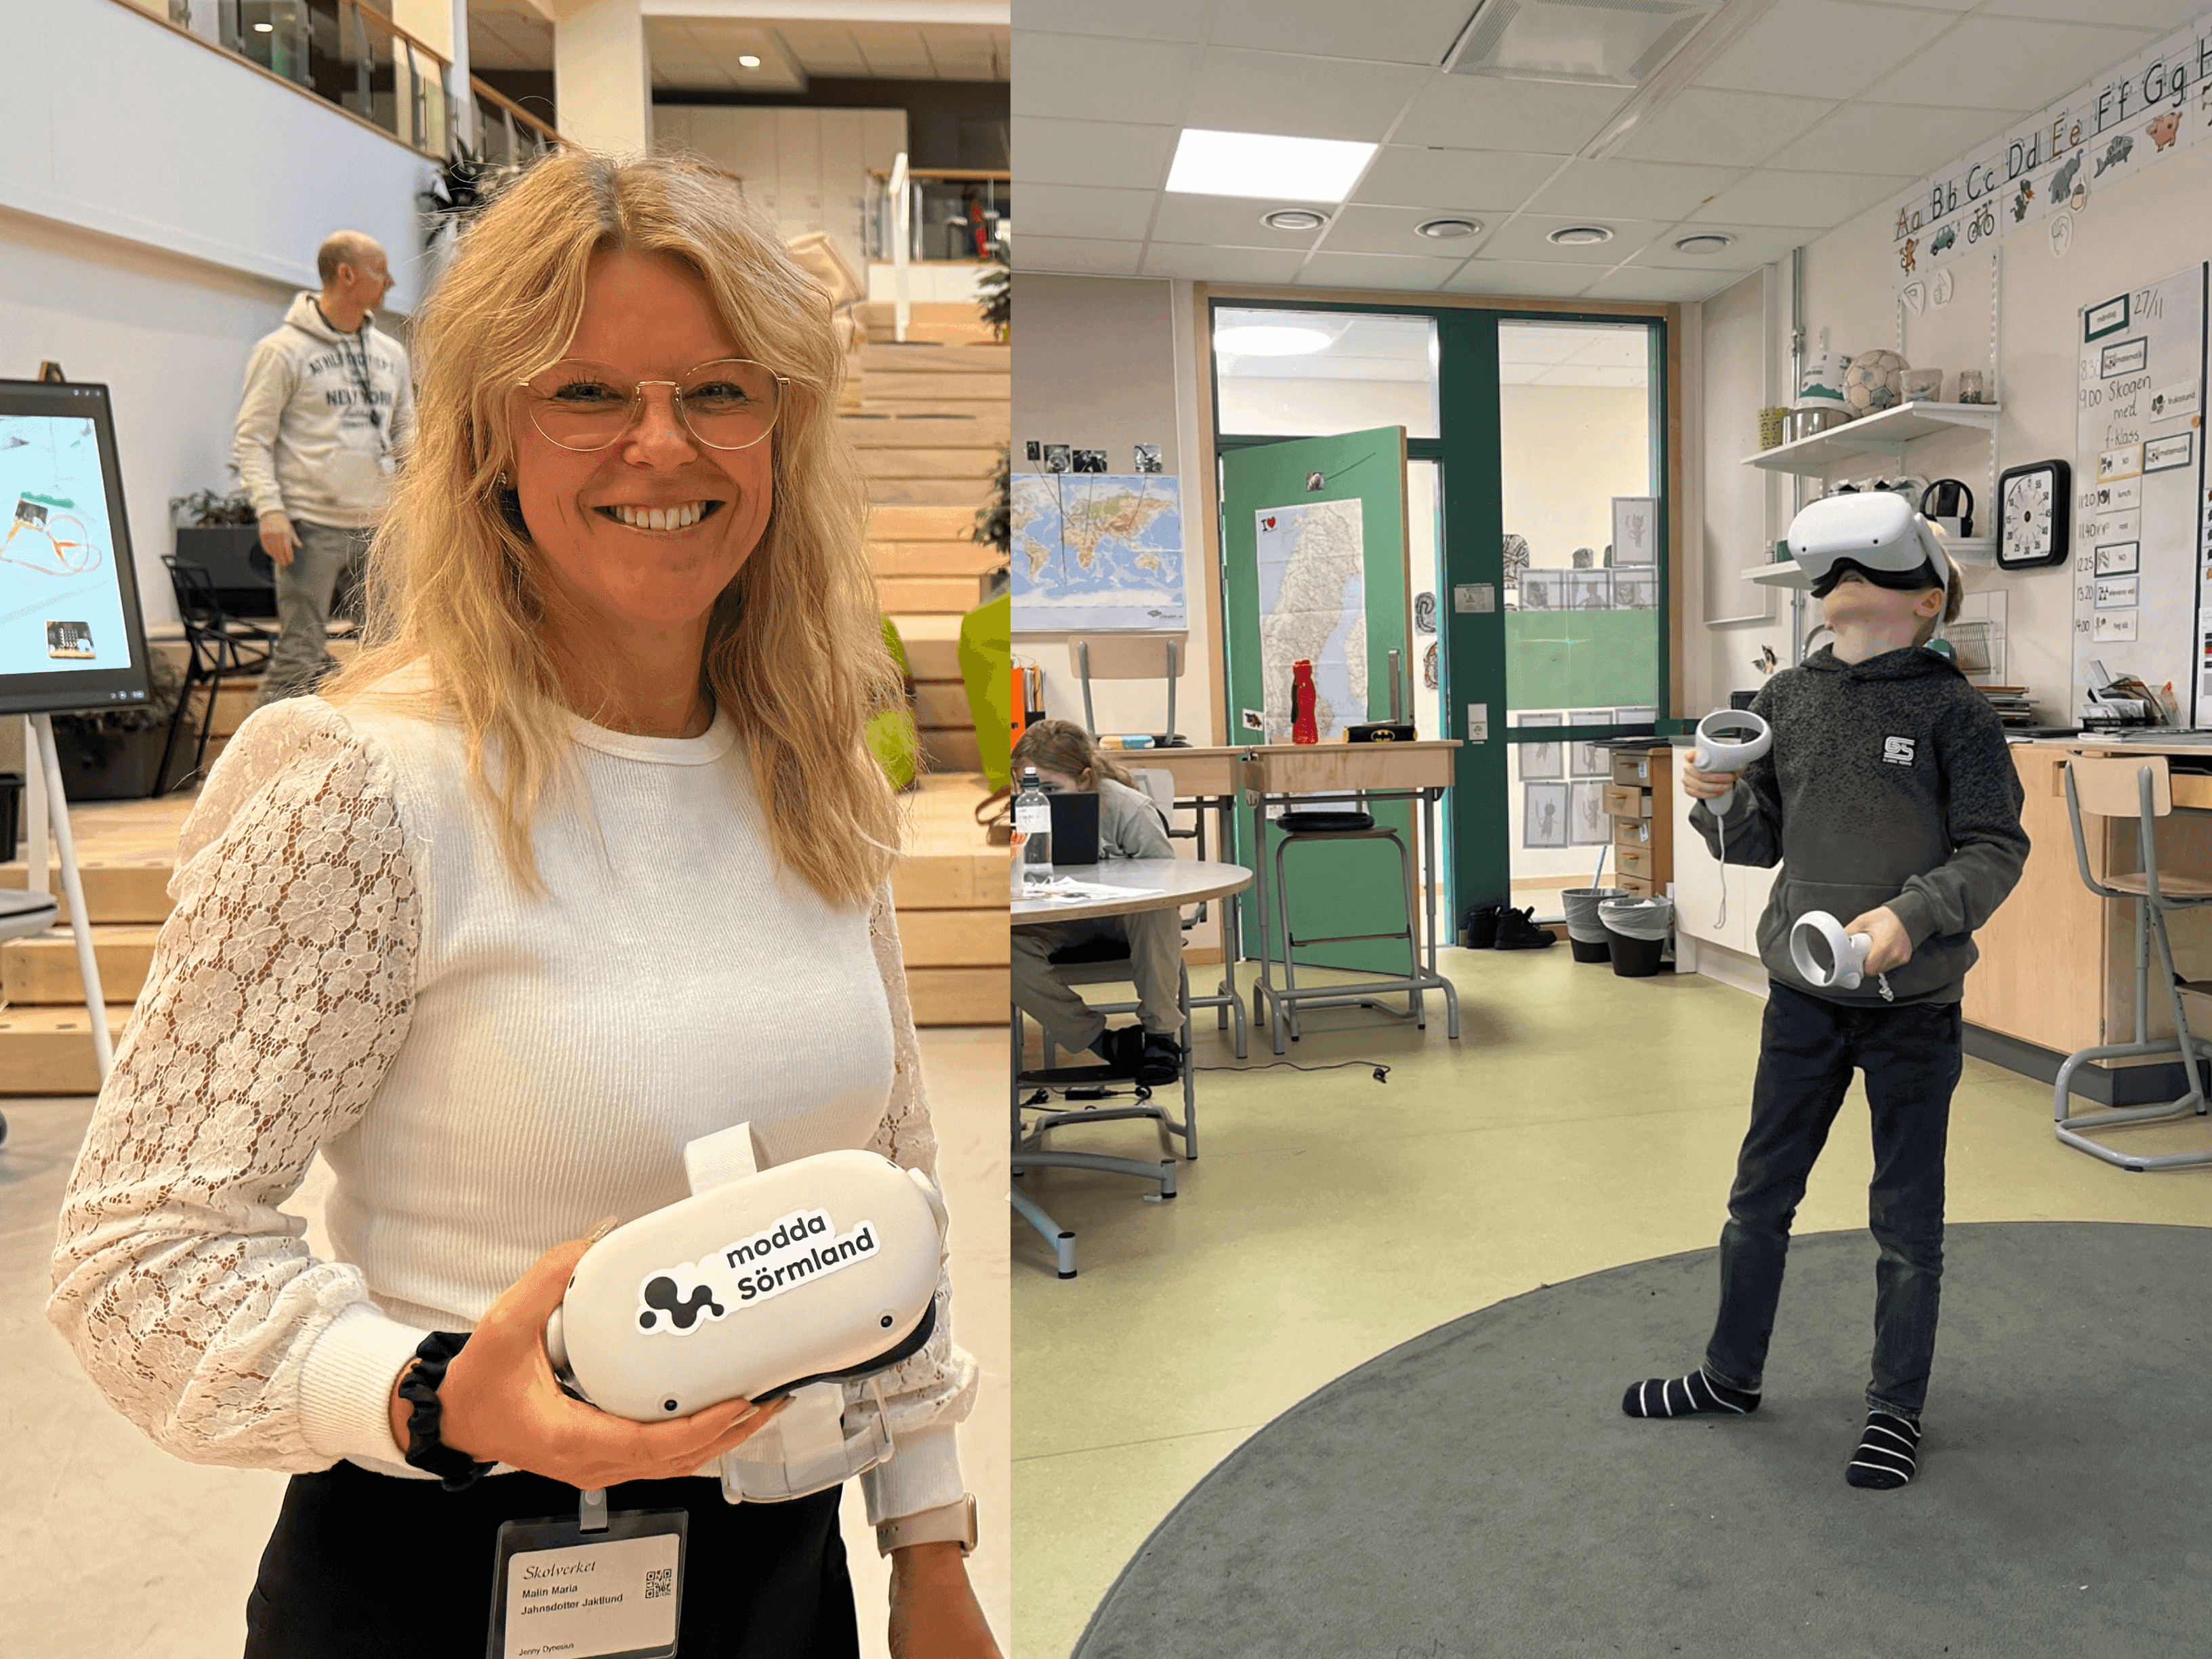 Till vänster, fotografir av Malin Jahnsdotter Jaklund som håller i VR glasögon. Till höger, ett barn på rund matta som har VR glasögon på sig